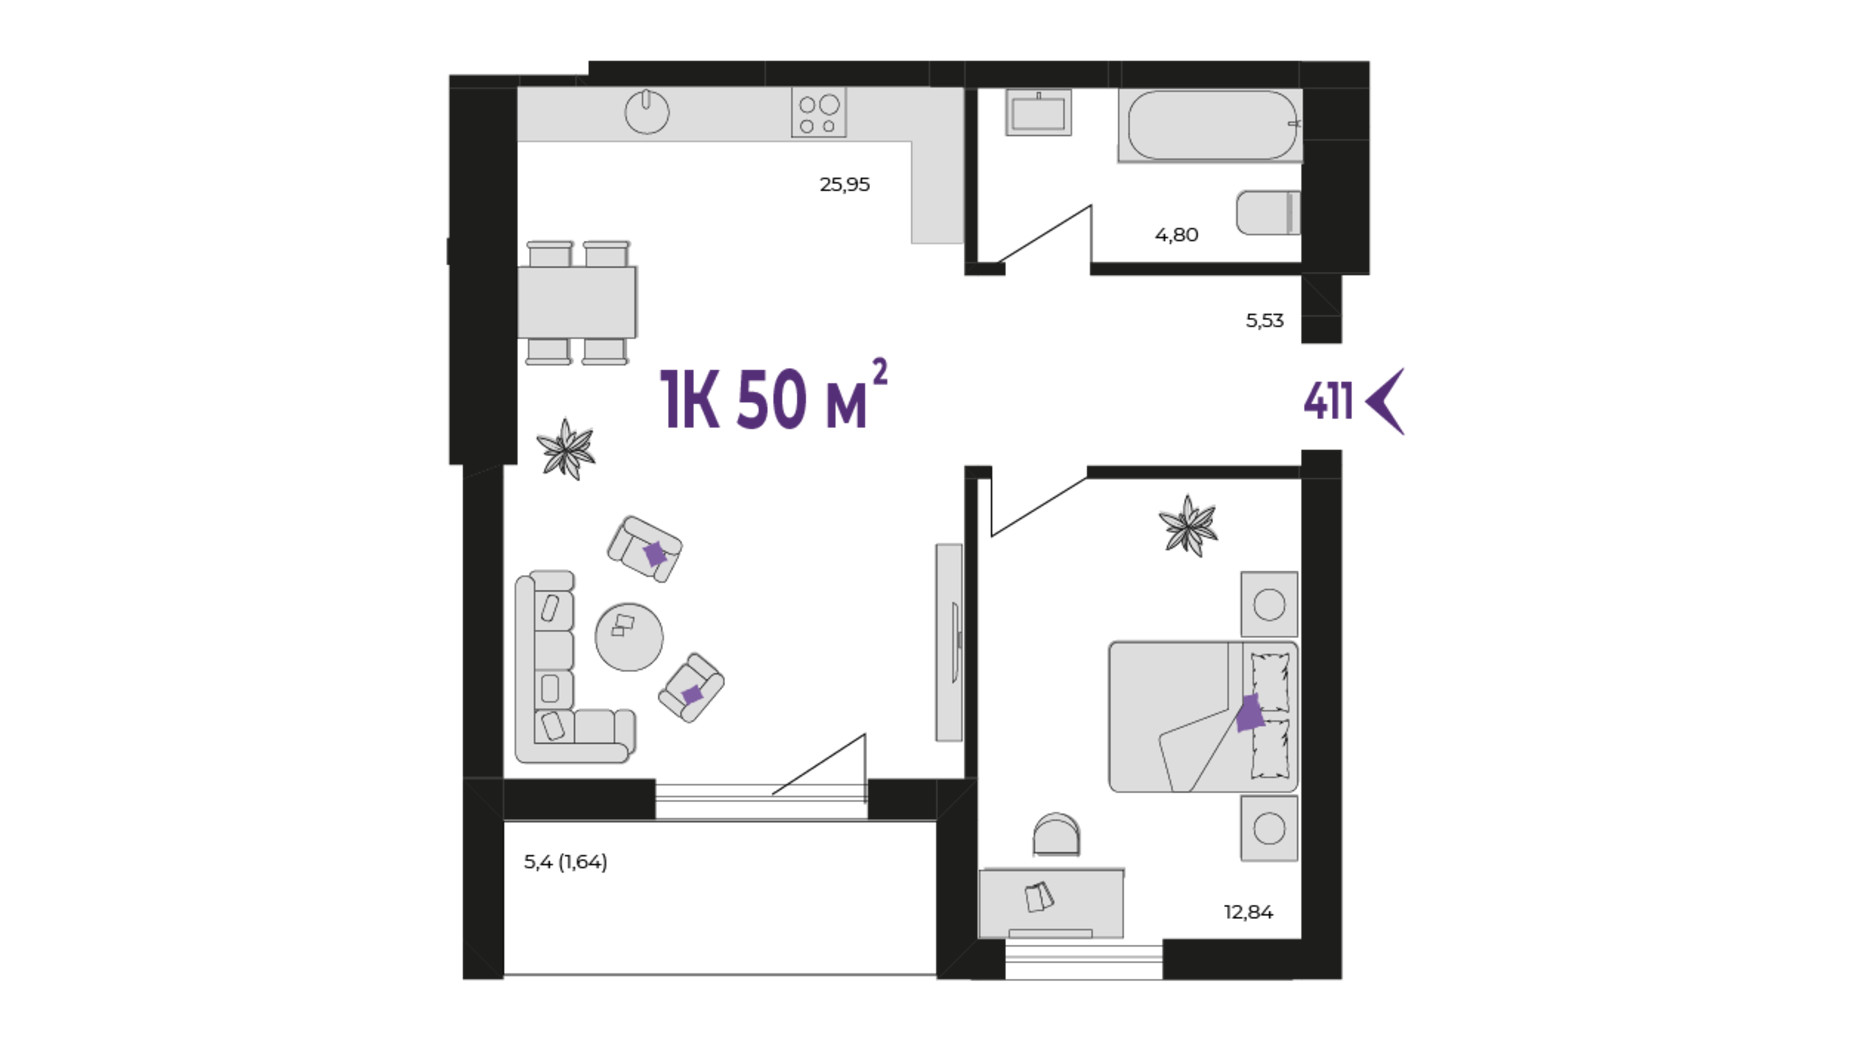 Планировка 1-комнатной квартиры в ЖК Wawel 50 м², фото 651404